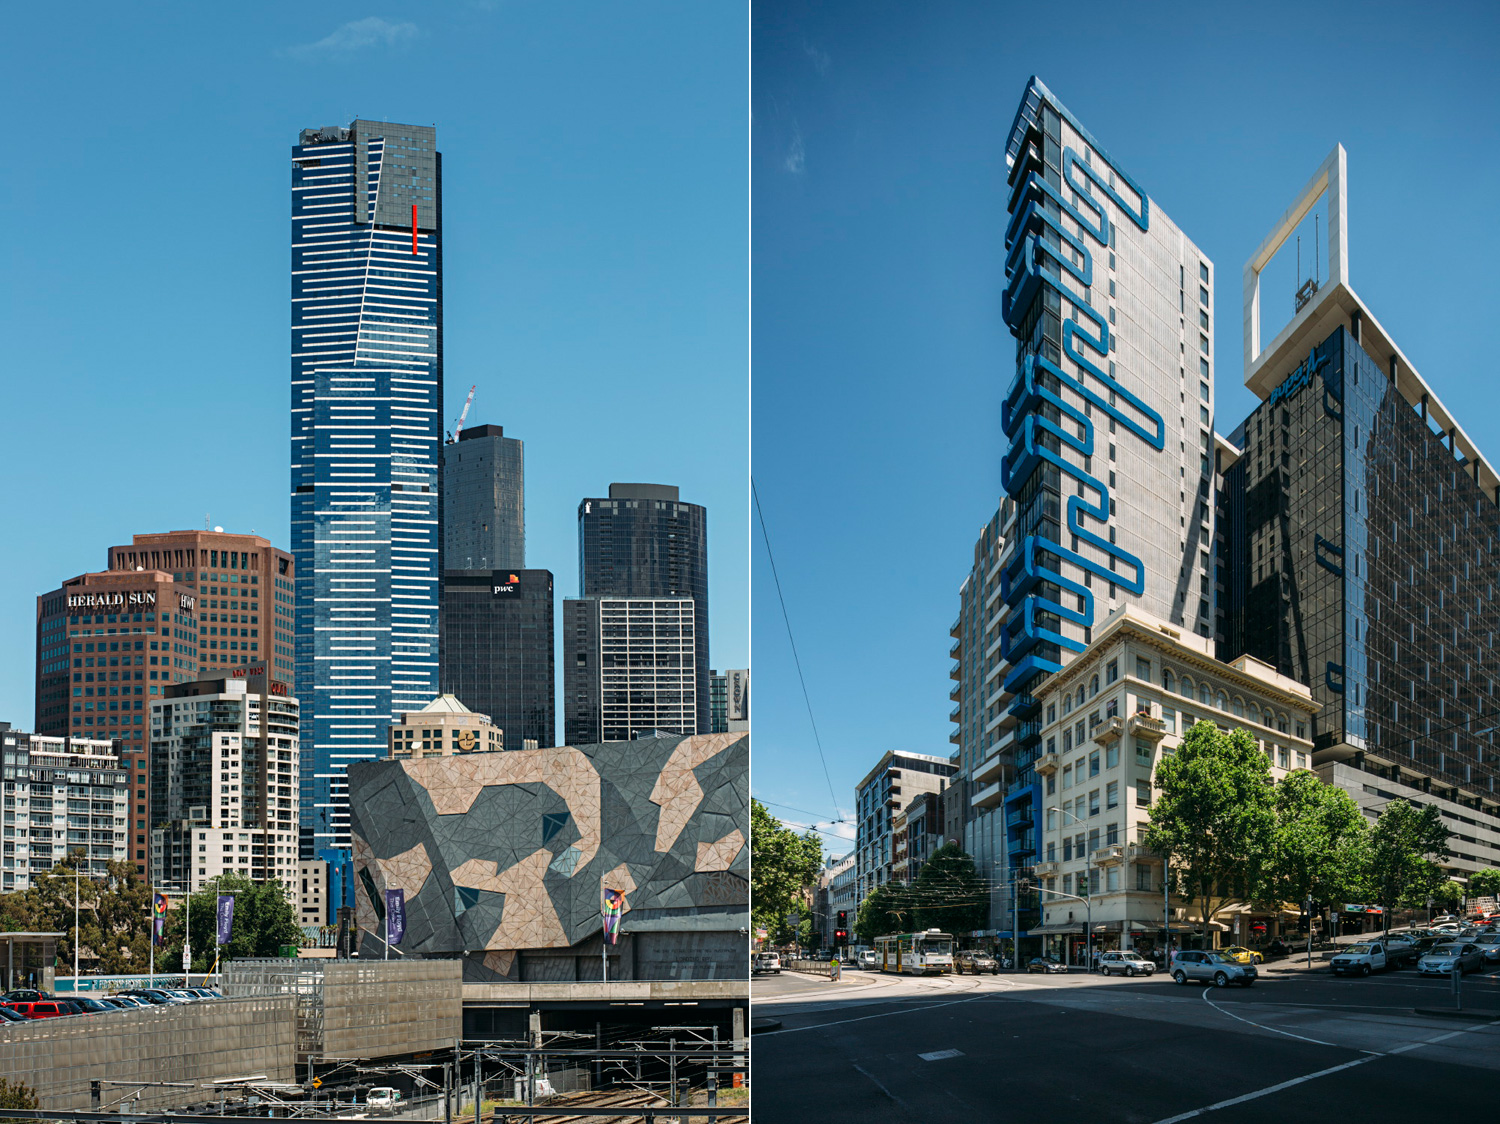 019-Melbourne-Architecture.jpg